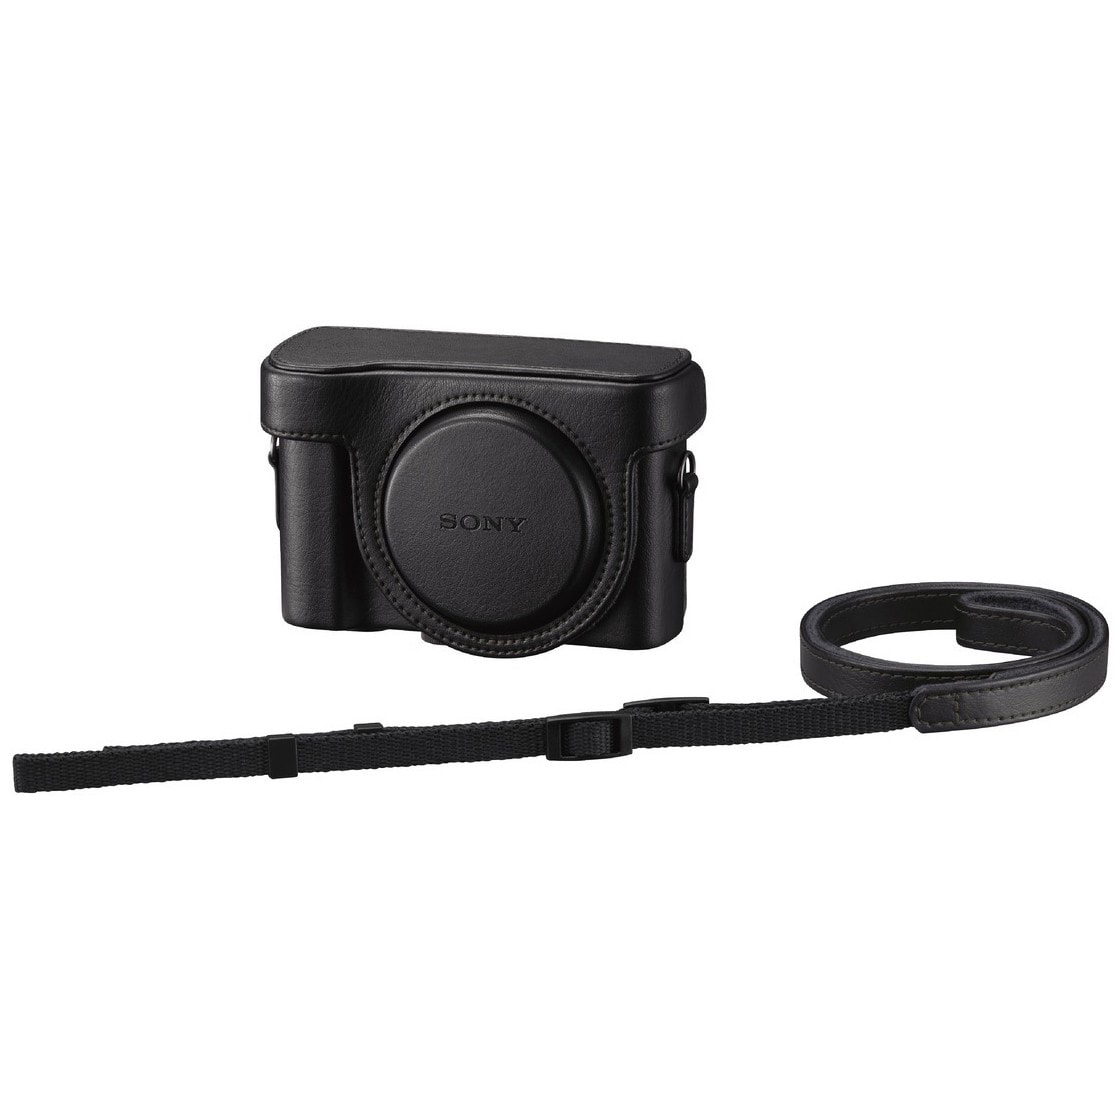 Sony kameraväska för CyberShot DSC-HX60V (svart) - Elgiganten